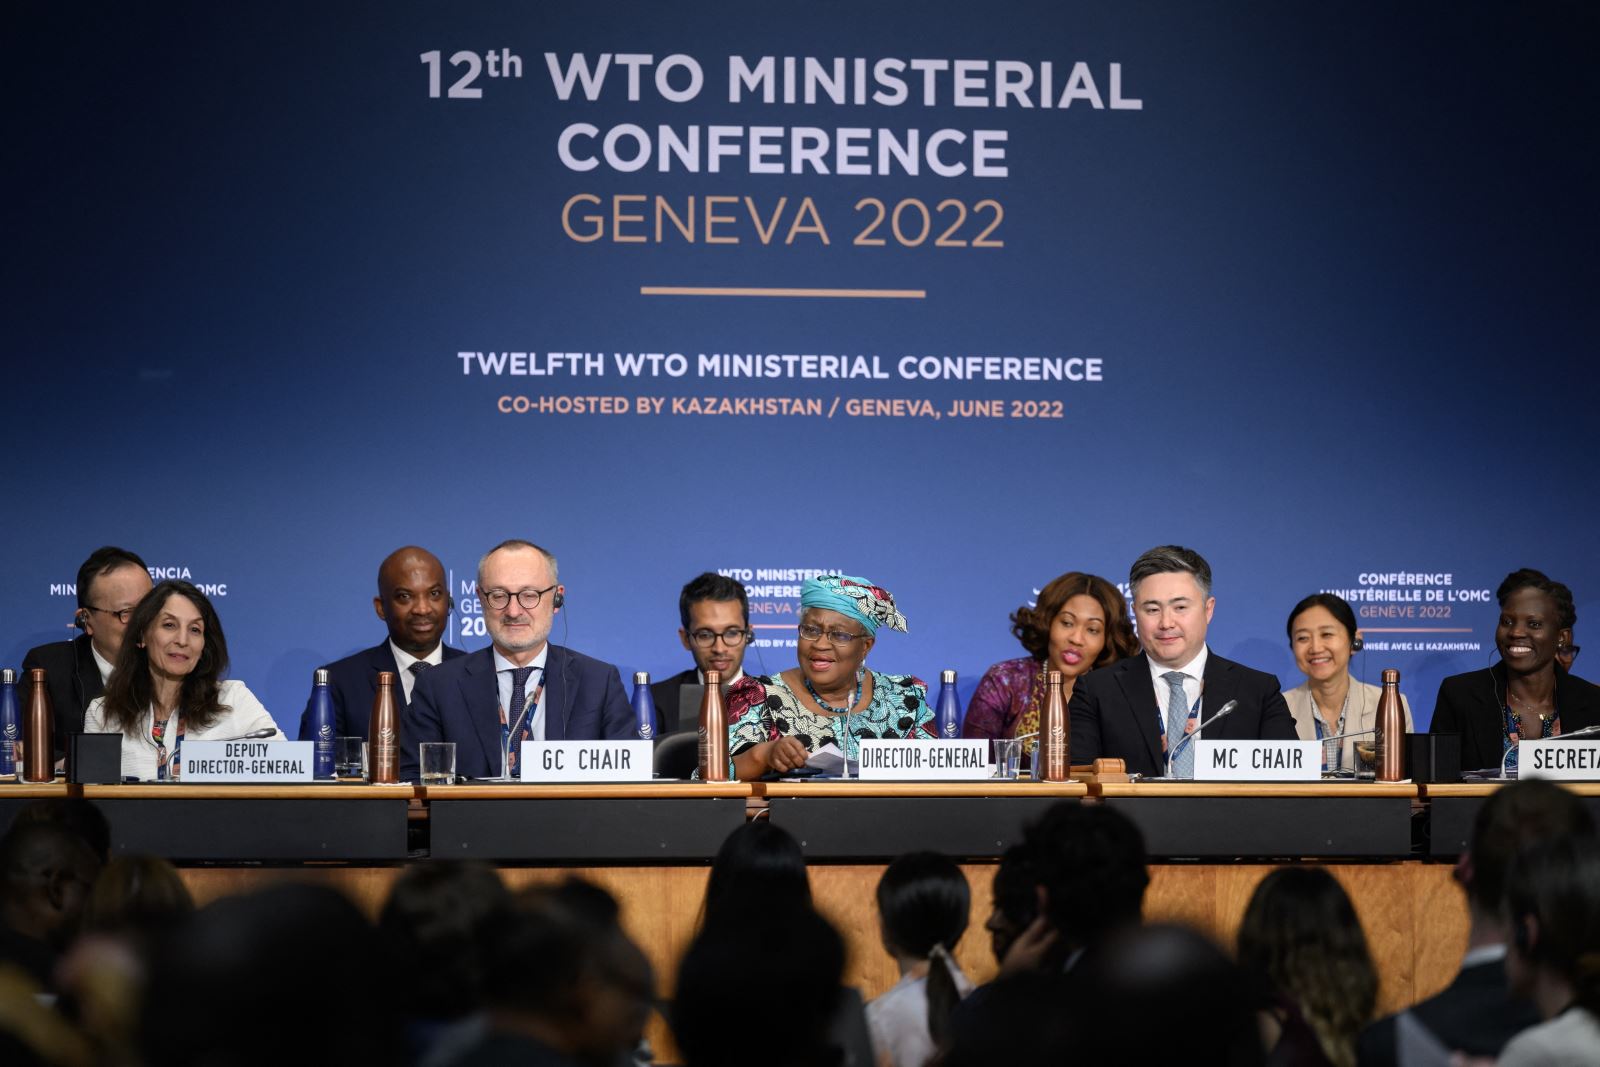 Tổng Giám đốc Tổ chức Thương mại Thế giới Ngozi Okonjo-Iweala (giữa) và các quan chức WTO tại phiên bế mạc Hội nghị Bộ trưởng WTO ở Geneva (Thụy Sĩ) ngày 17-6-2022. Ảnh: AFP-TTXVN